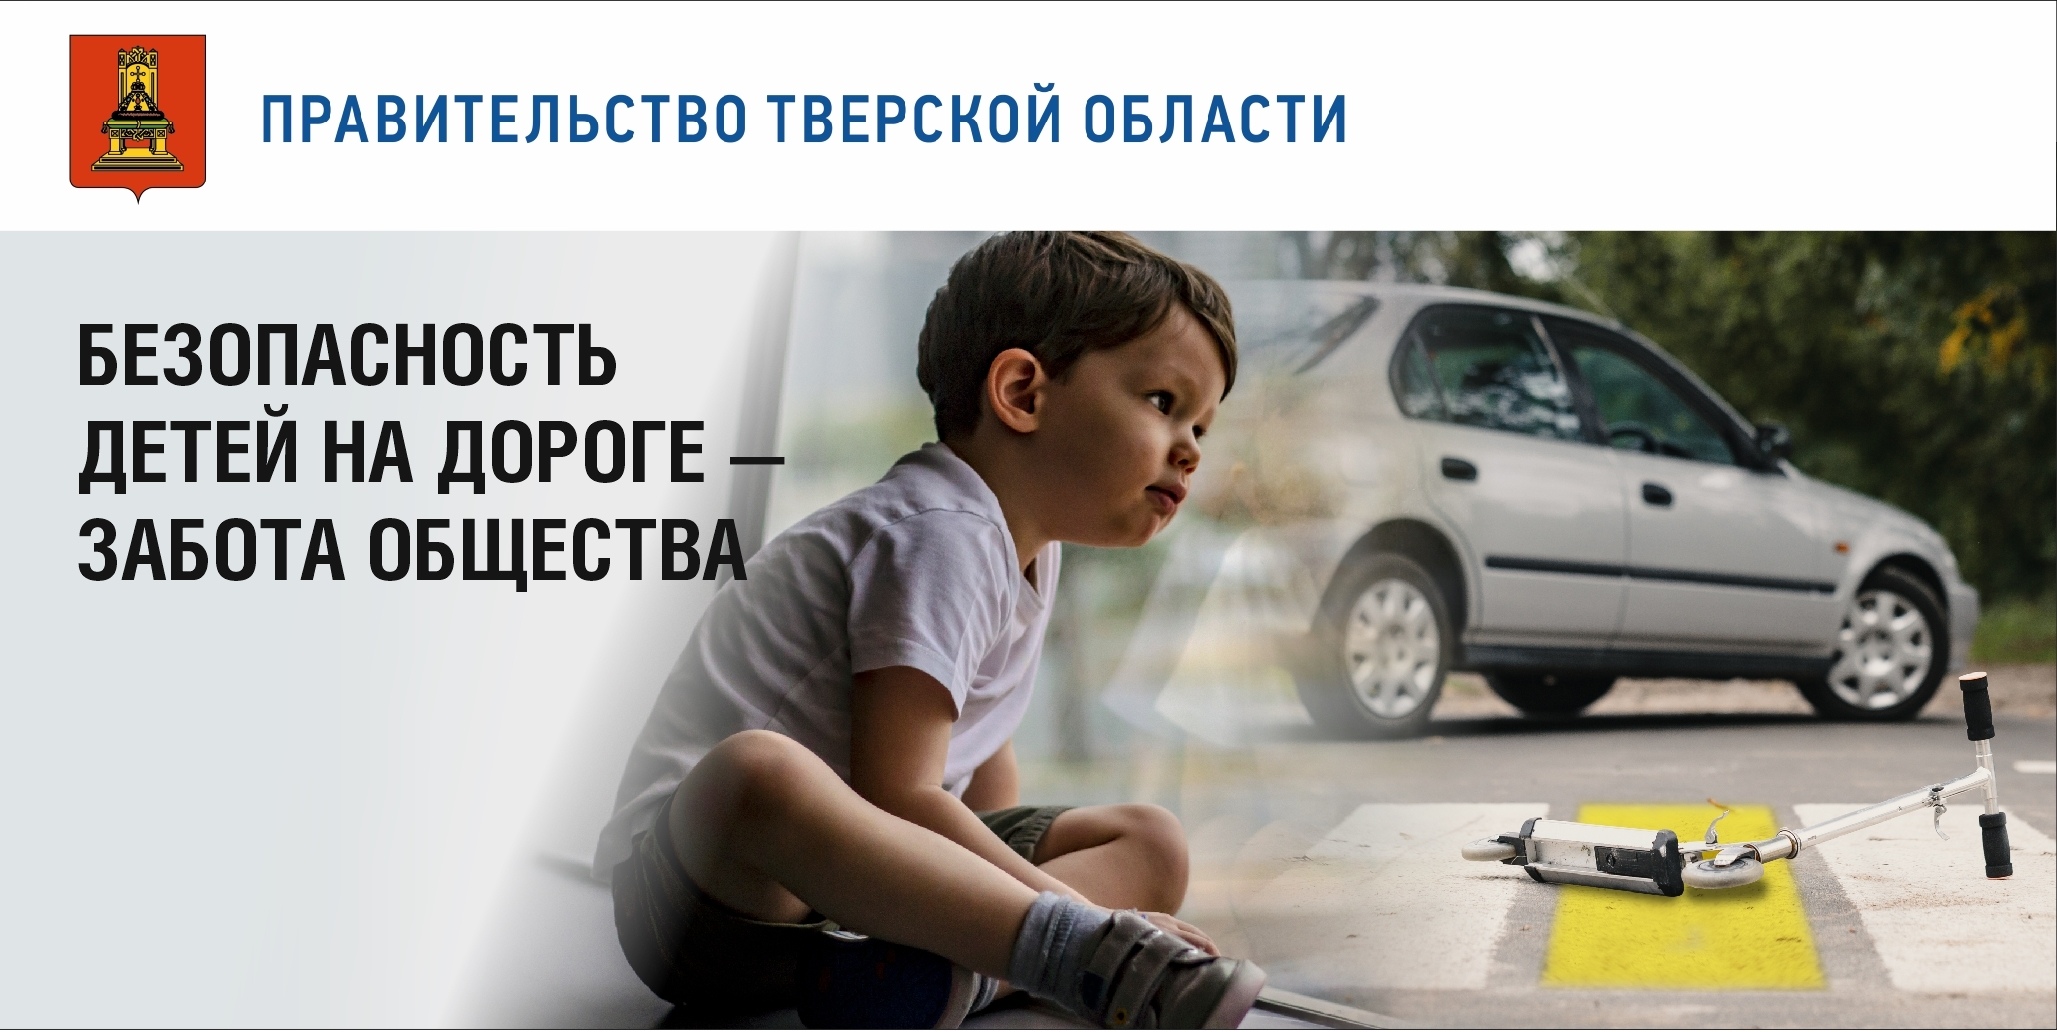 Акция дорога детям. Позаботьтесь о безопасности детей на дороге. Соц реклама дети на дороге. Вниманию родителей безопасность детей на дорогах. Безопасность детей на дороге забота общества.